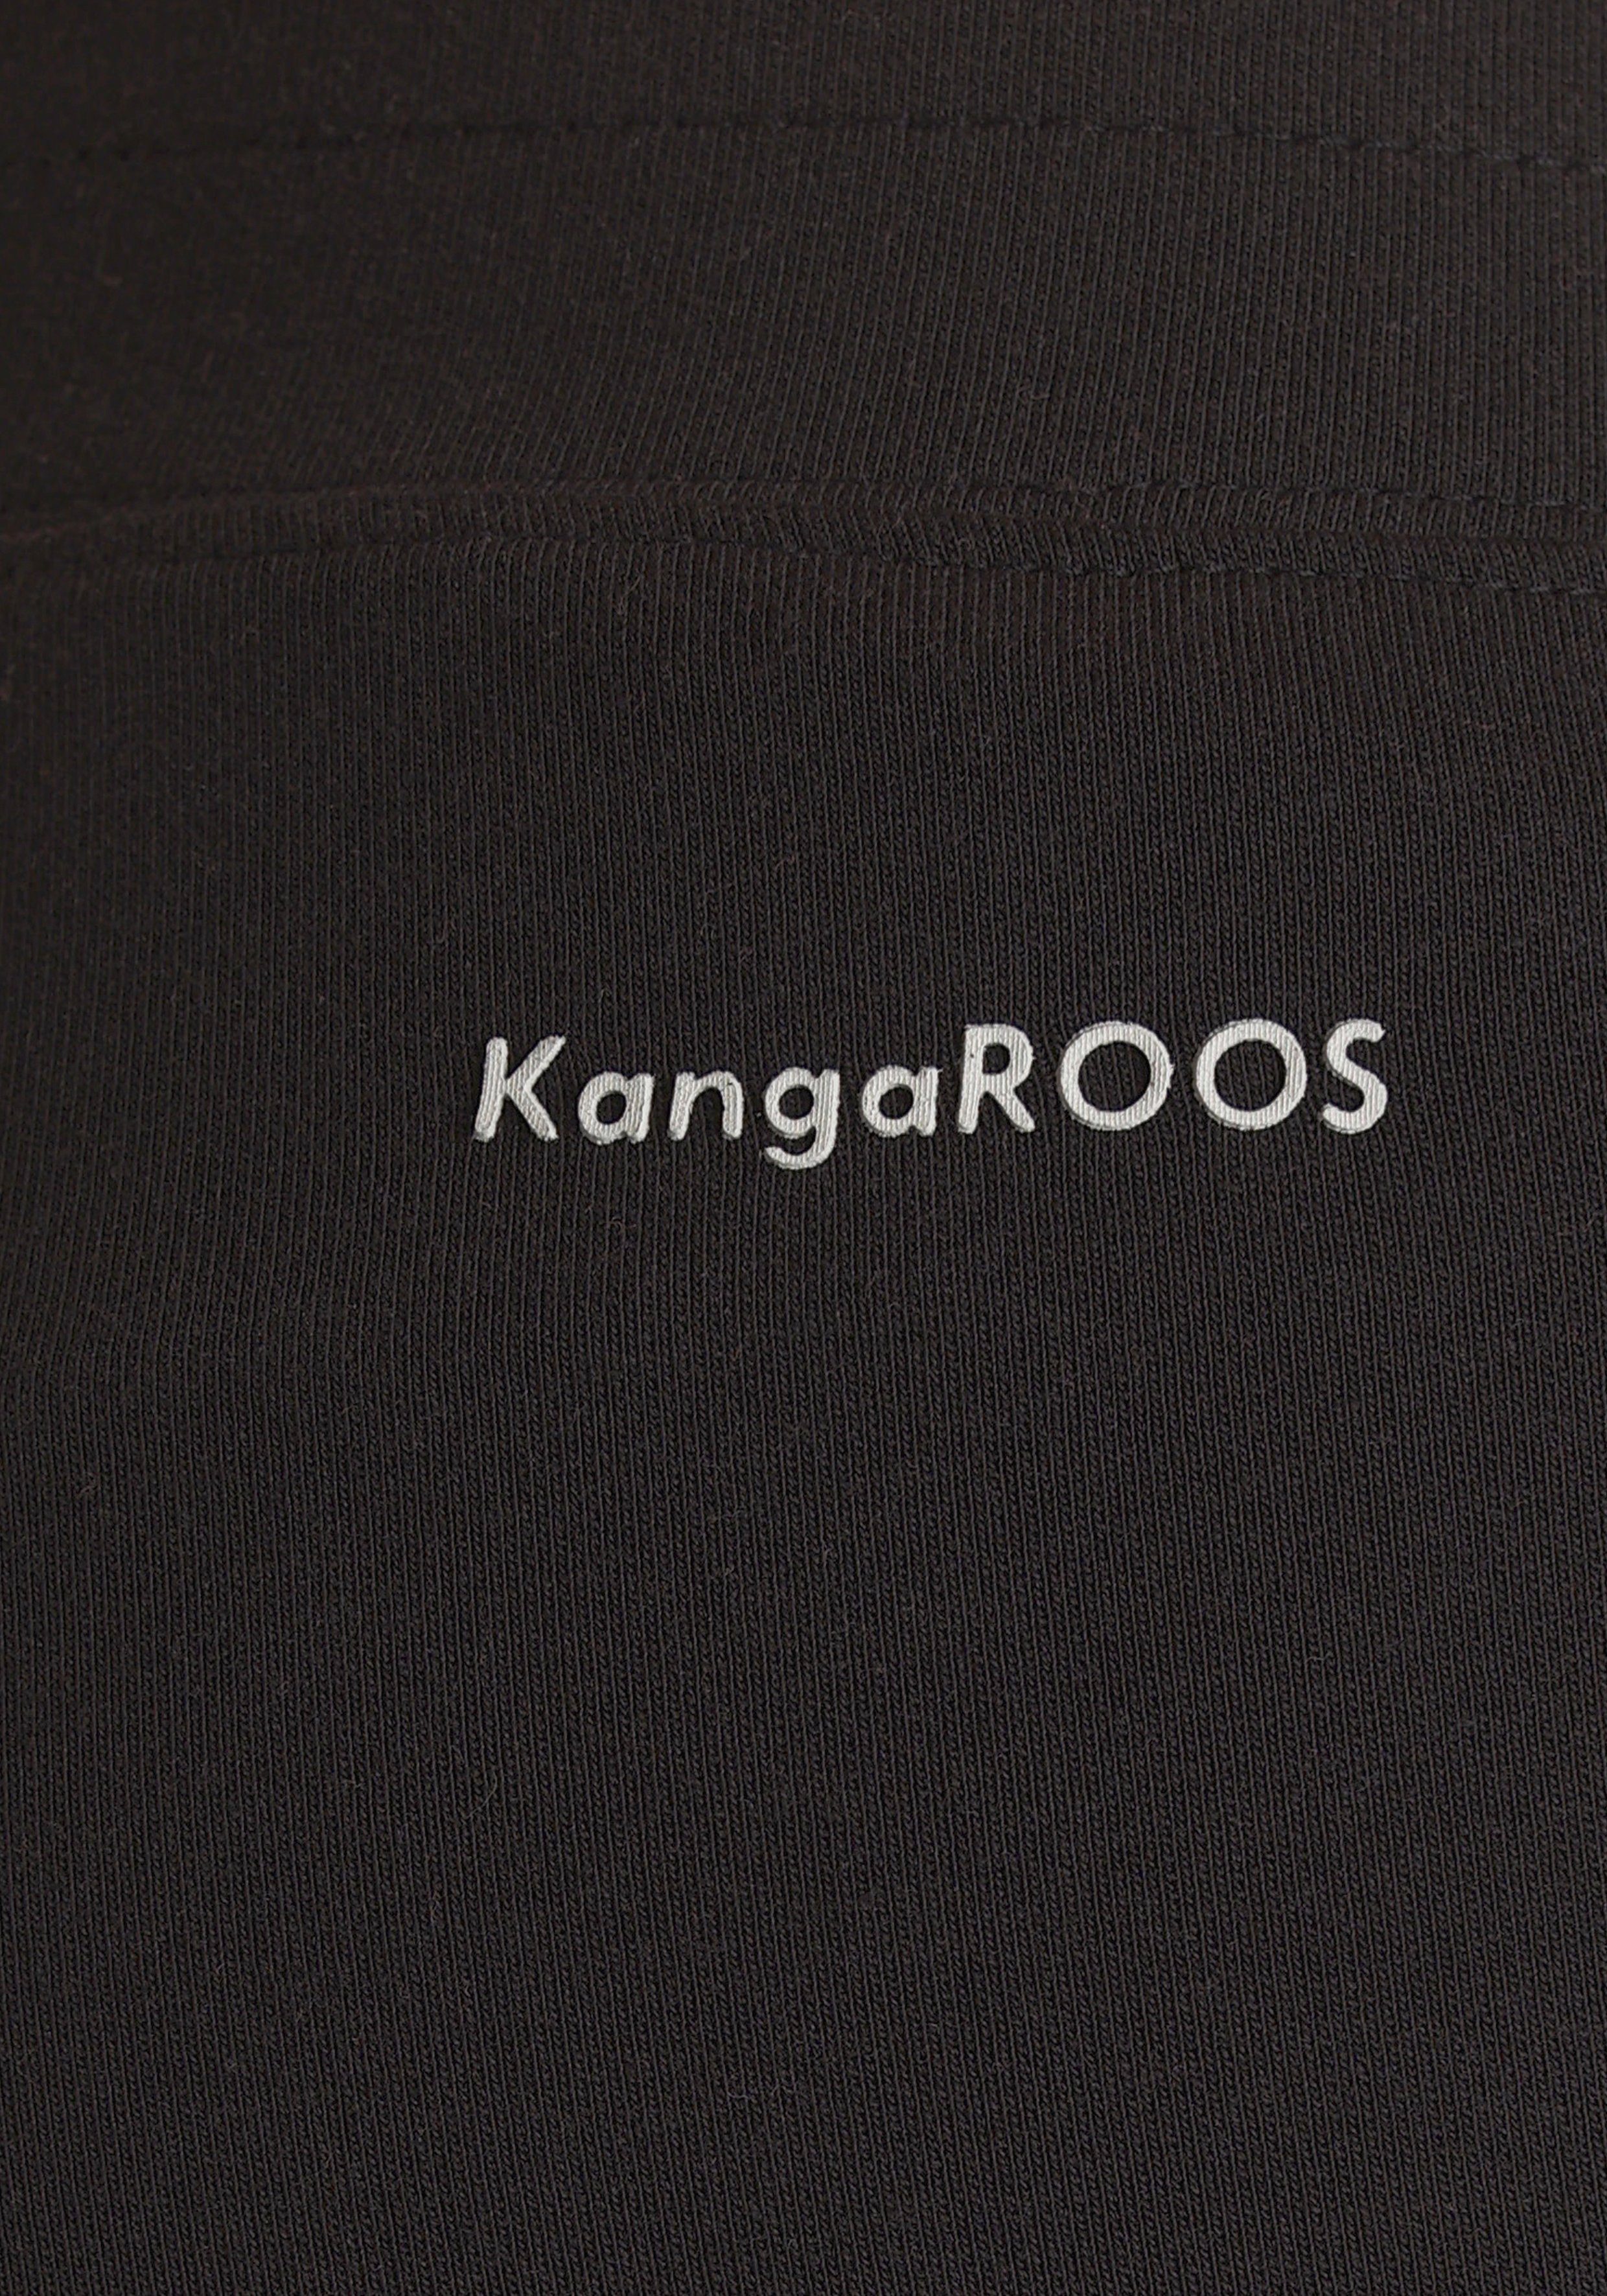 & Bund KOLLEKTION Bootcut-Style KangaROOS schwarz Jazzpants - im NEUE mit Elastischem Tunnelzug